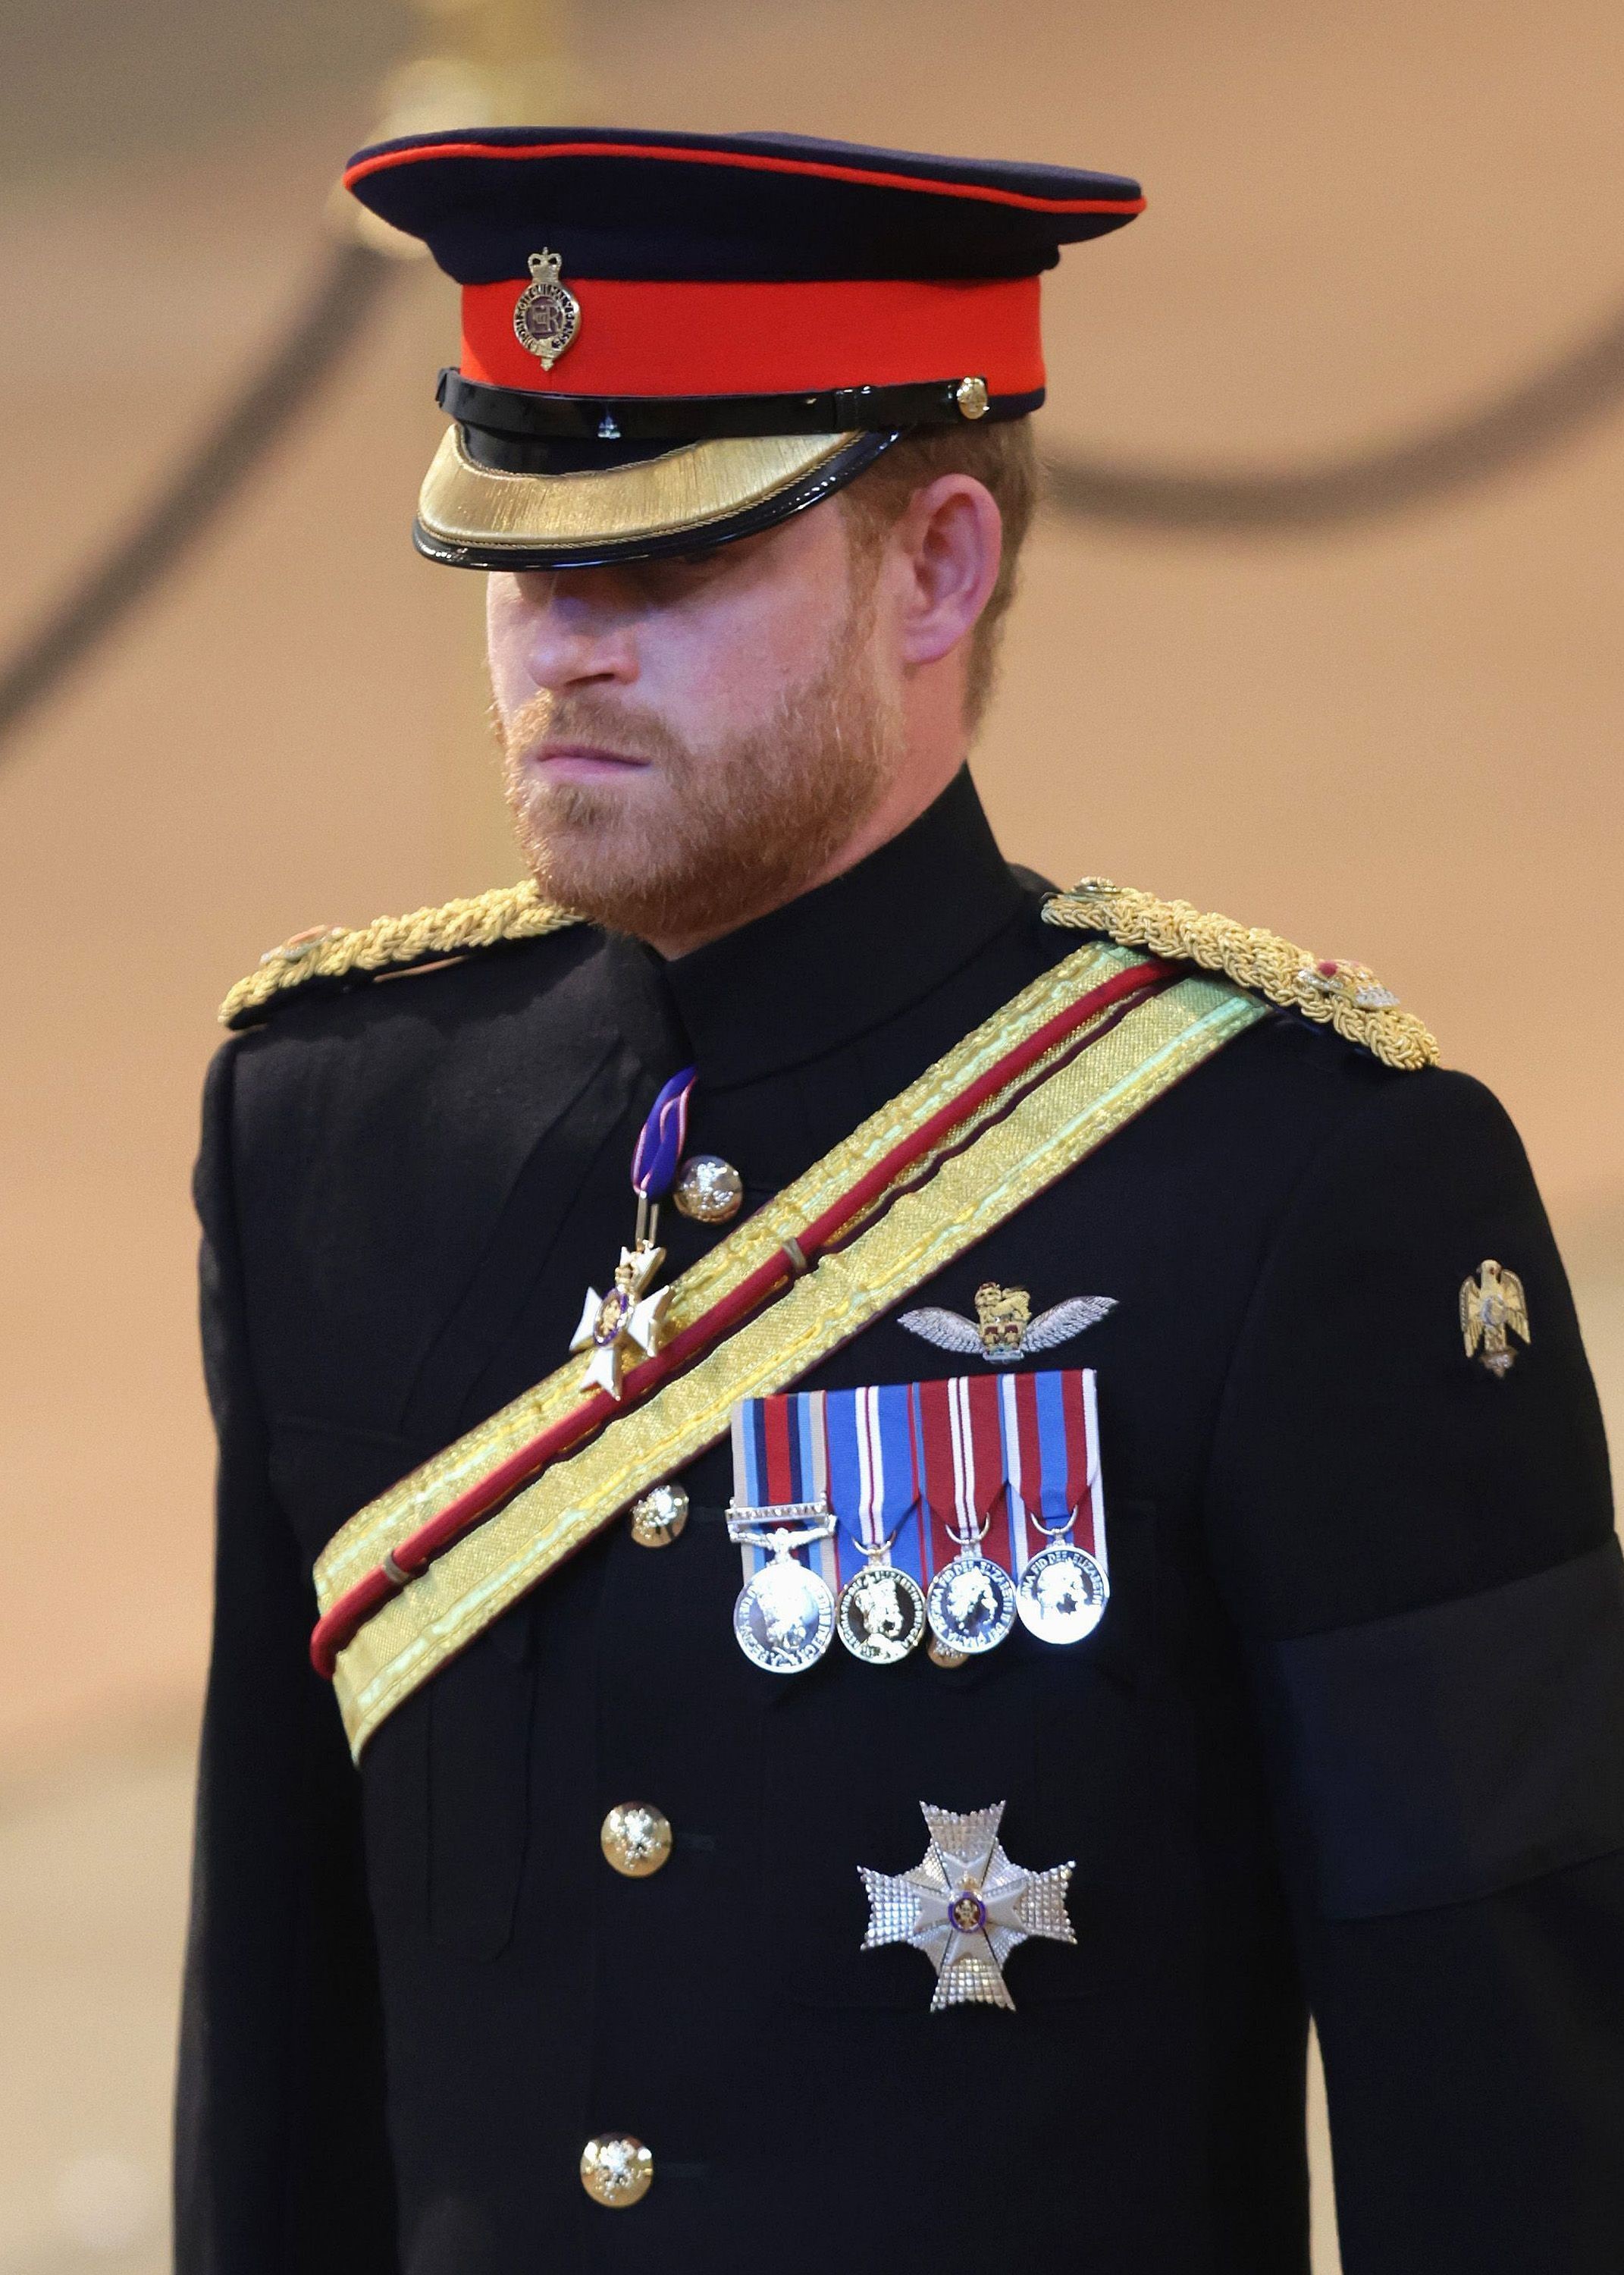 Príncipe Harry, o duque de Sussex, chega para realizar uma vigília em homenagem à rainha Elizabeth II no Westminster Hall em 17 de setembro de 2022 em Londres, Inglaterra (Foto: Getty Images)